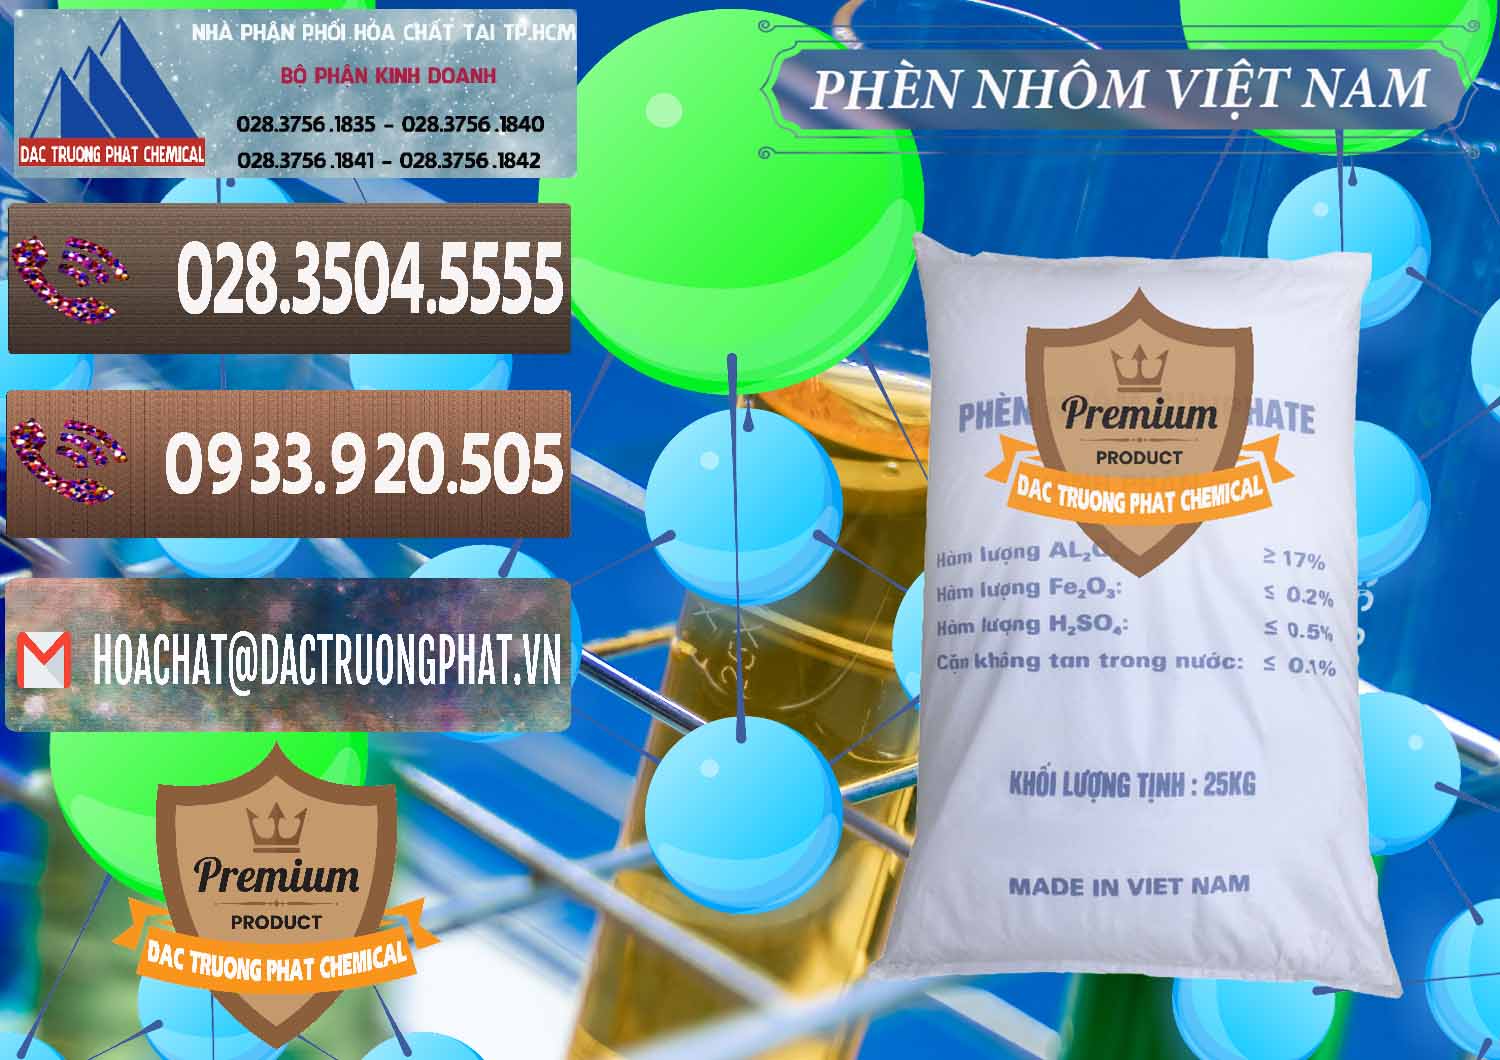 Nơi phân phối - bán Phèn Nhôm - Al2(SO4)3 17% Việt Nam - 0465 - Công ty chuyên kinh doanh & cung cấp hóa chất tại TP.HCM - hoachatviet.net